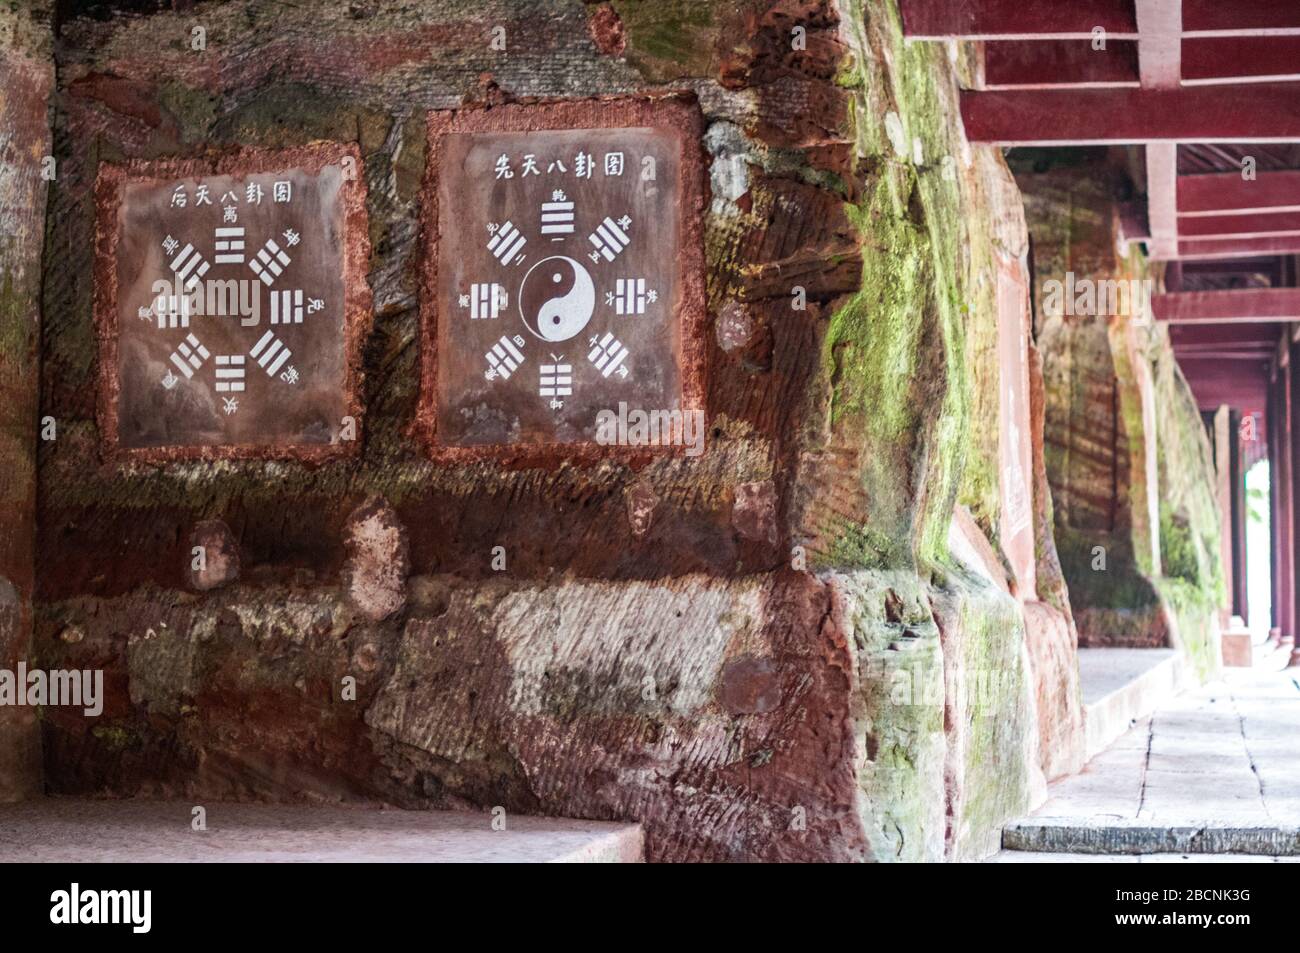 Stèles de Temple Lingyun, y compris les symboles Taoïste et Yin Yang Bagua. Leshan, province du Sichuan, Chine Banque D'Images